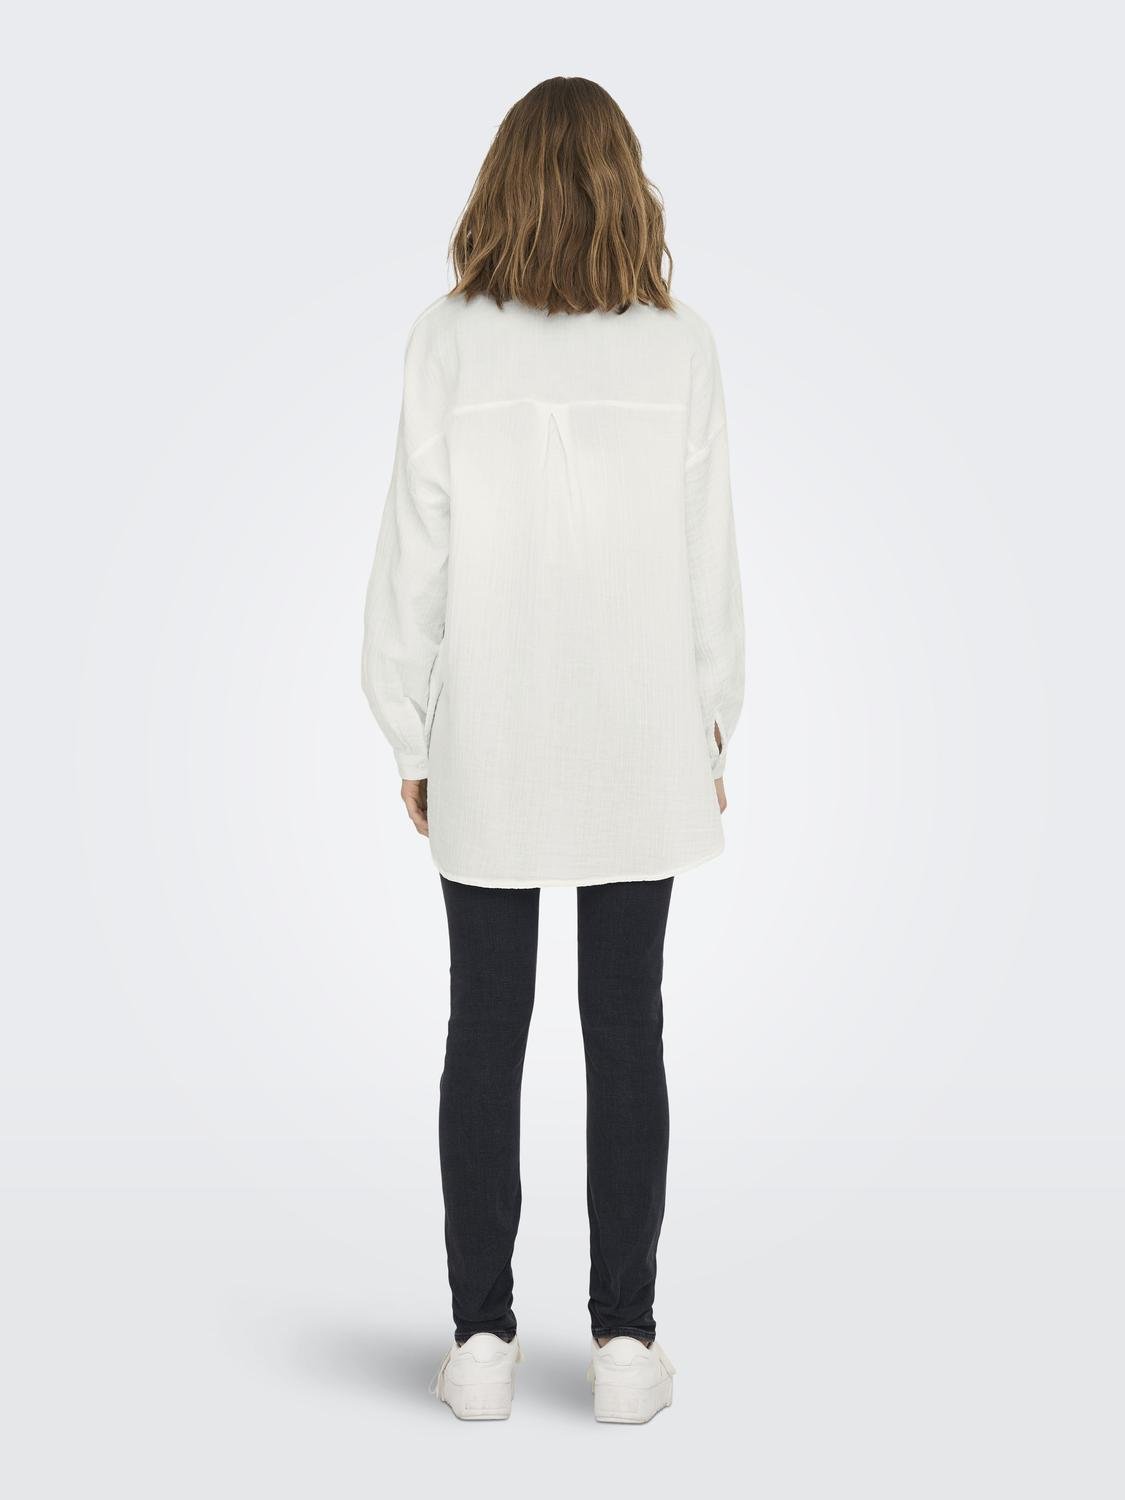 VASSARETTE Women's Silken Heather Demi T-Shirt Bra 75247, White Ice, 34C:  Buy Online at Best Price in UAE 